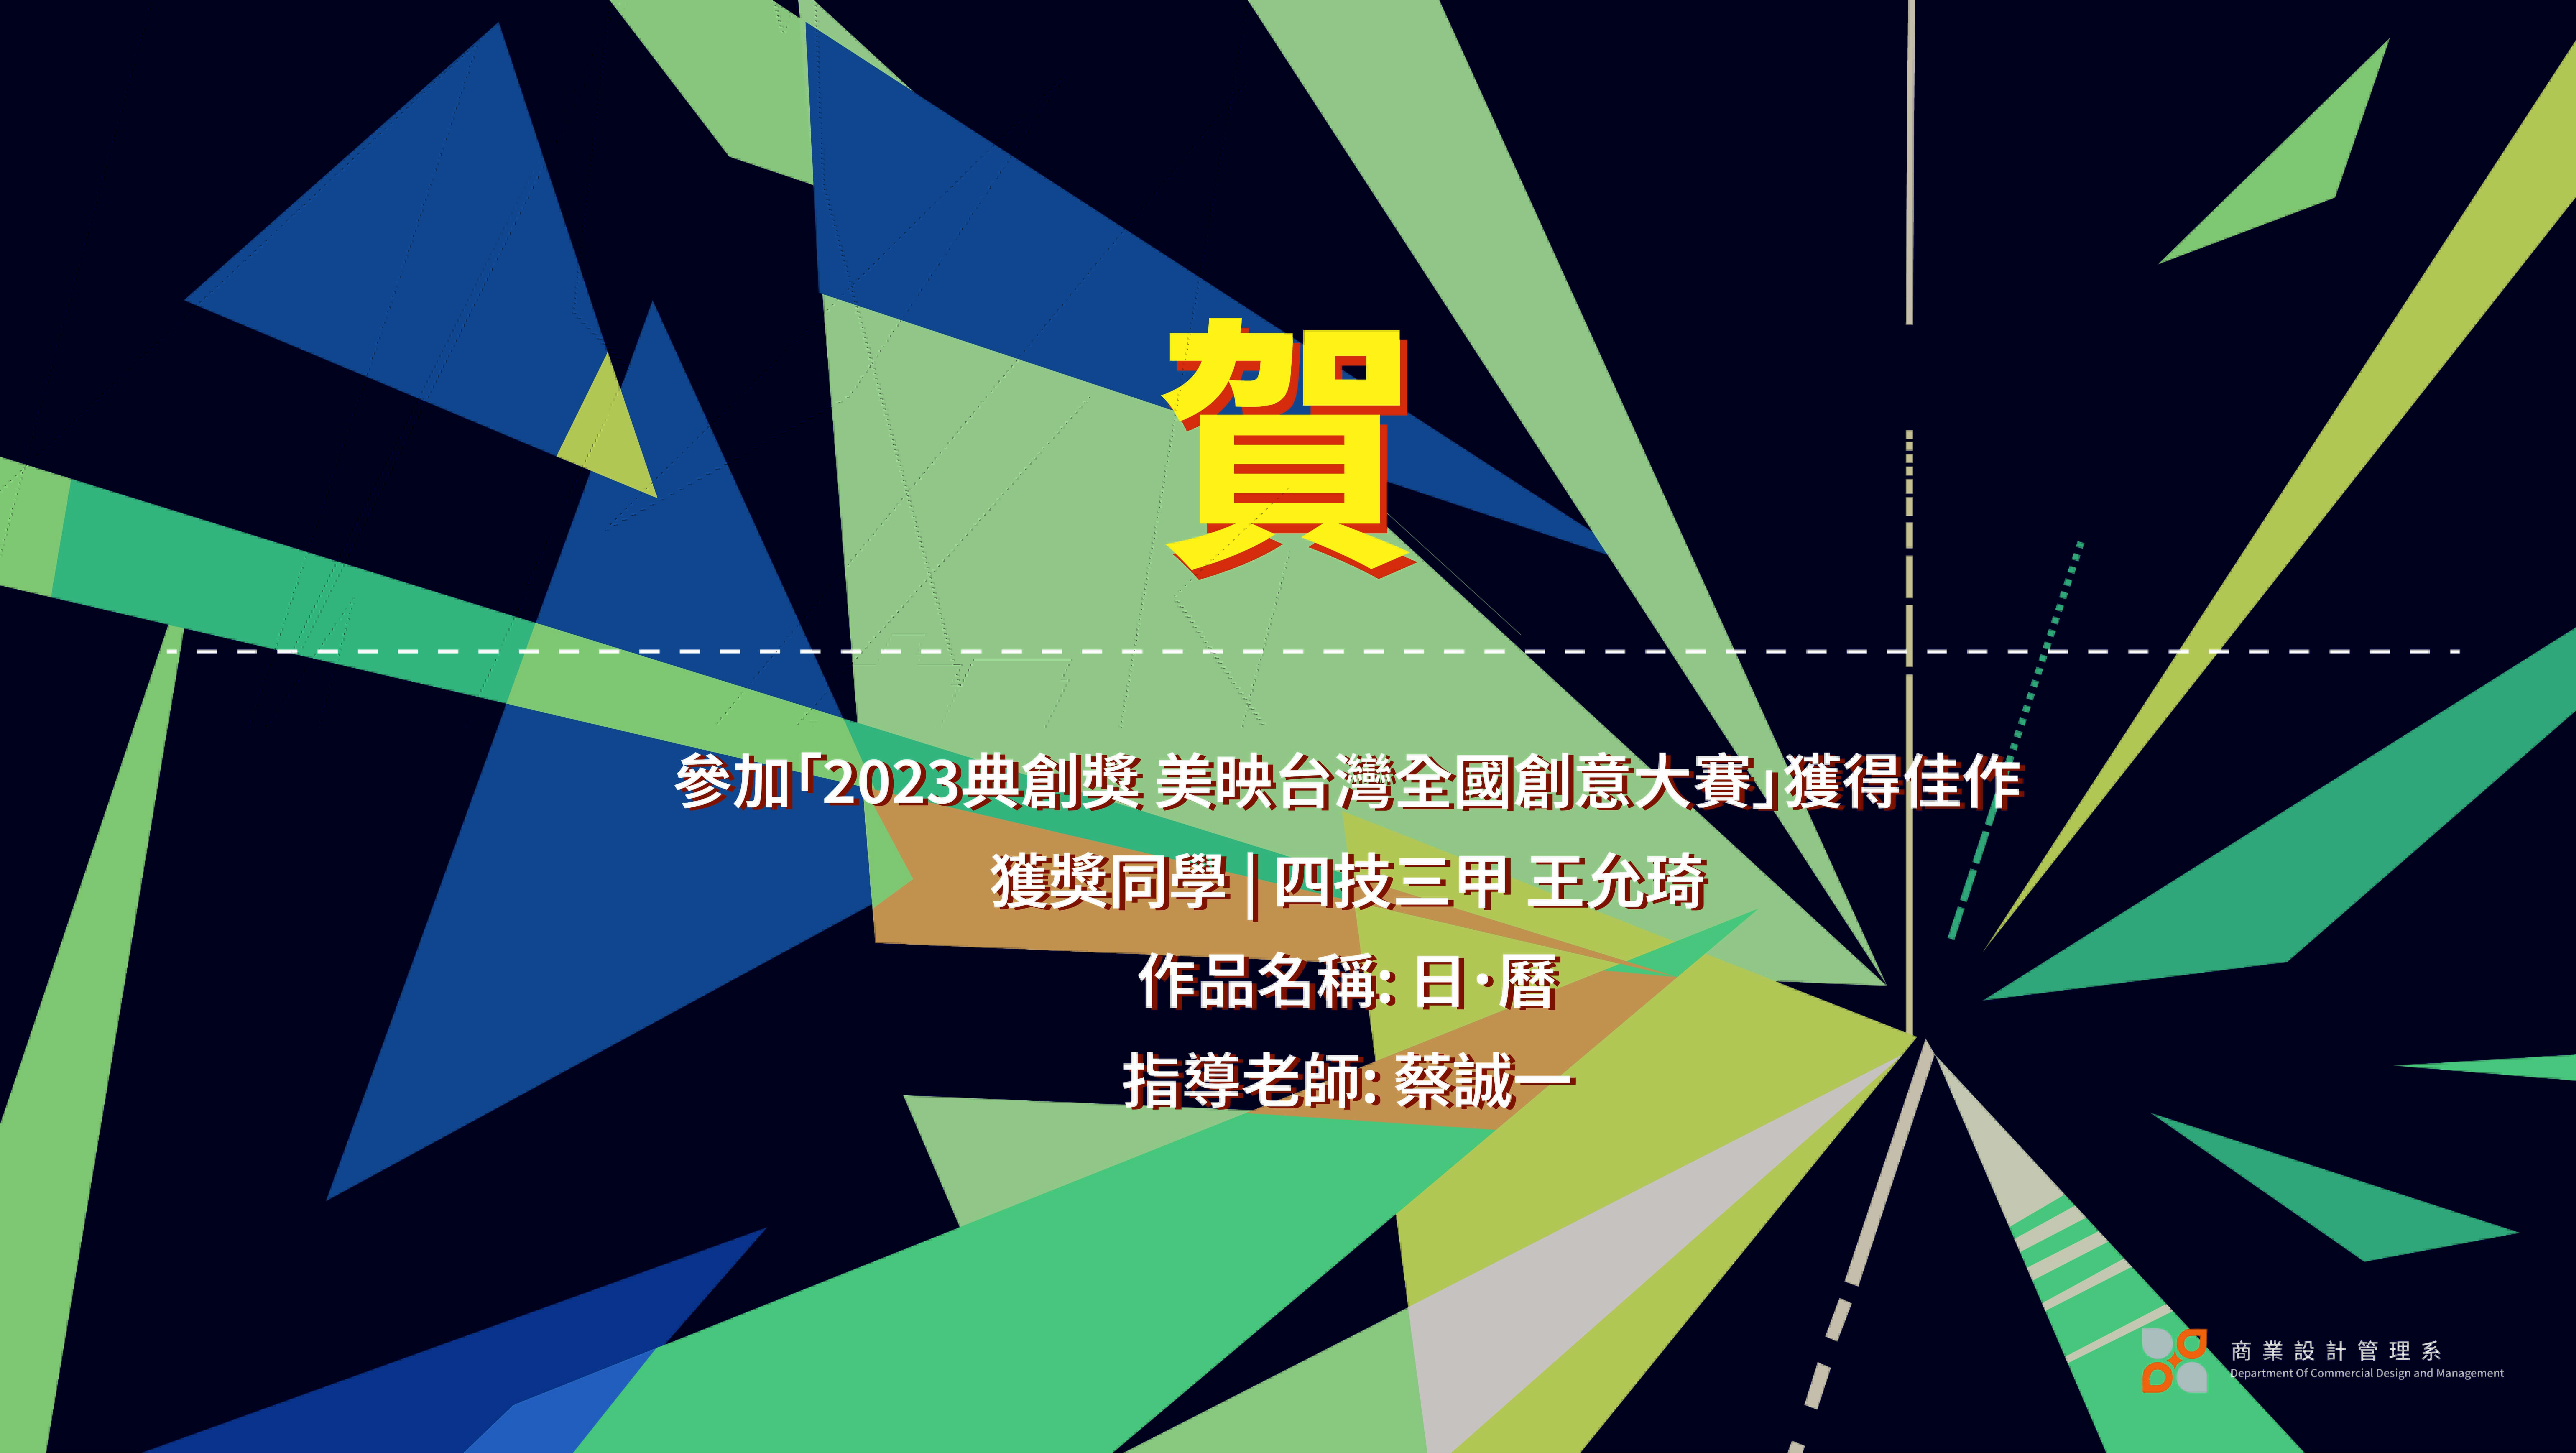 恭喜本系雙四技三甲王允琦同學參加「2023典創獎 美映台灣全國創意大賽」獲得佳作。